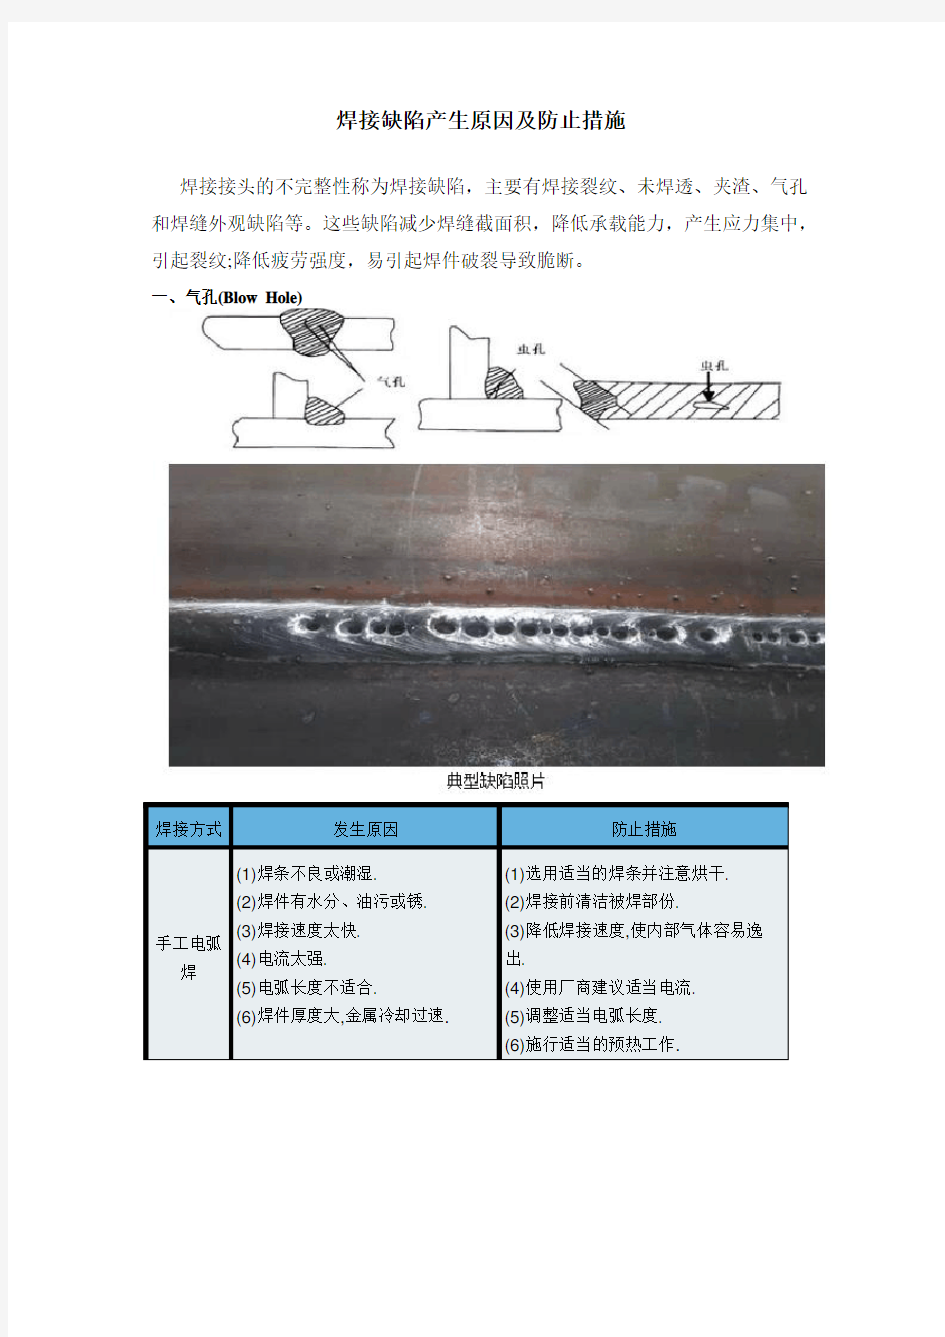 手工焊和二保焊-焊接缺陷产生原因及防止措施